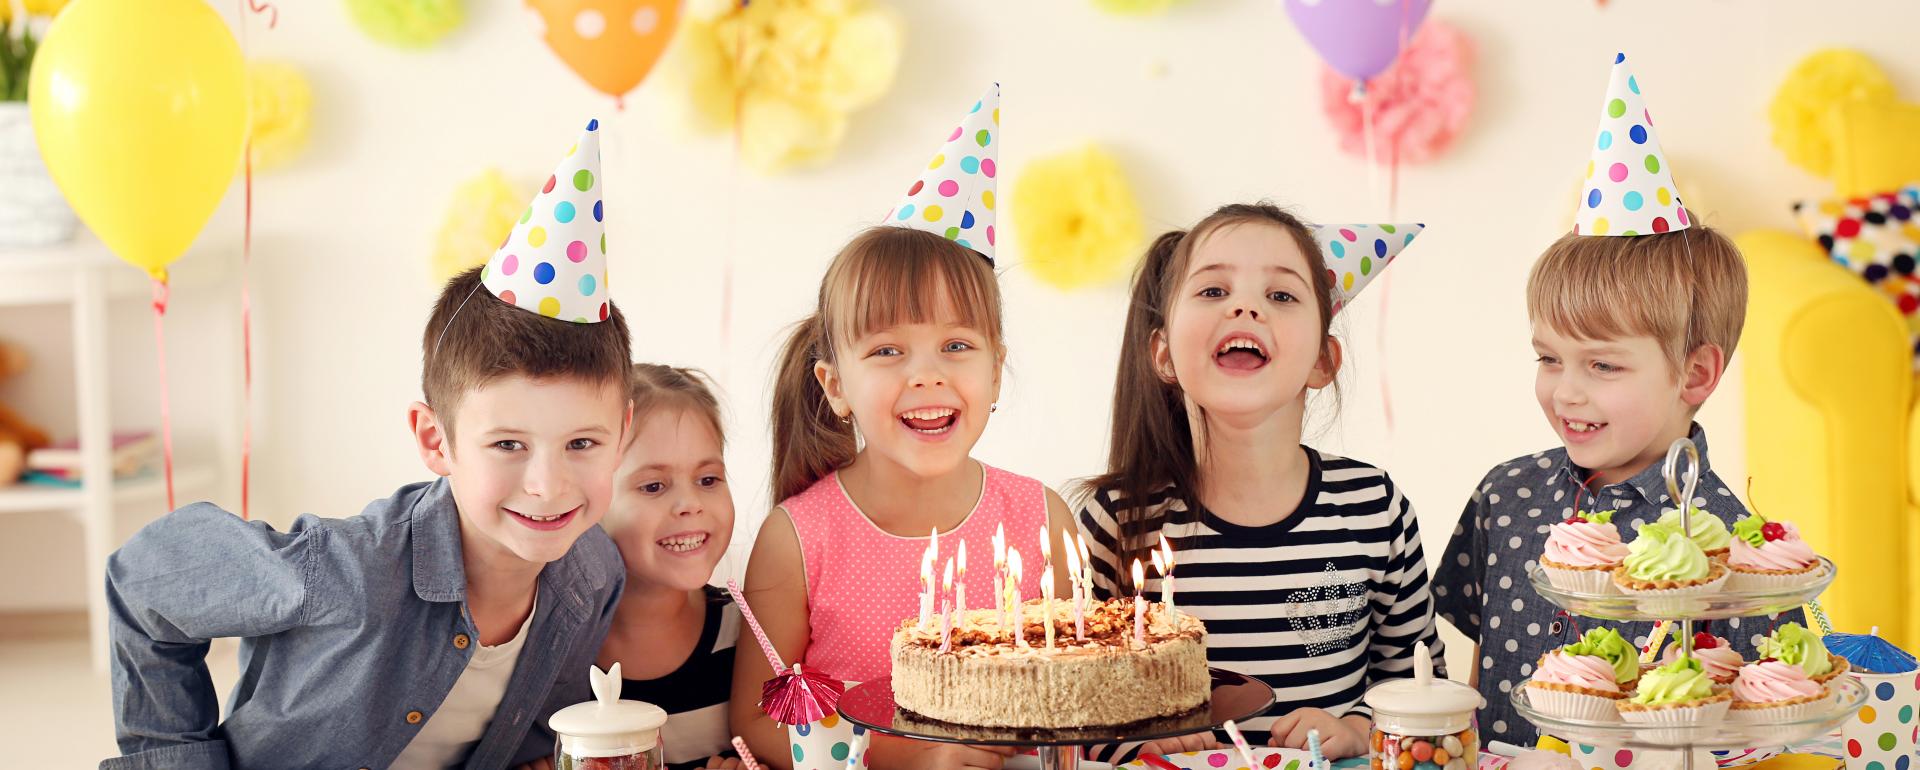 Stylowe urodziny dziecka - jak nakryć do stołu?